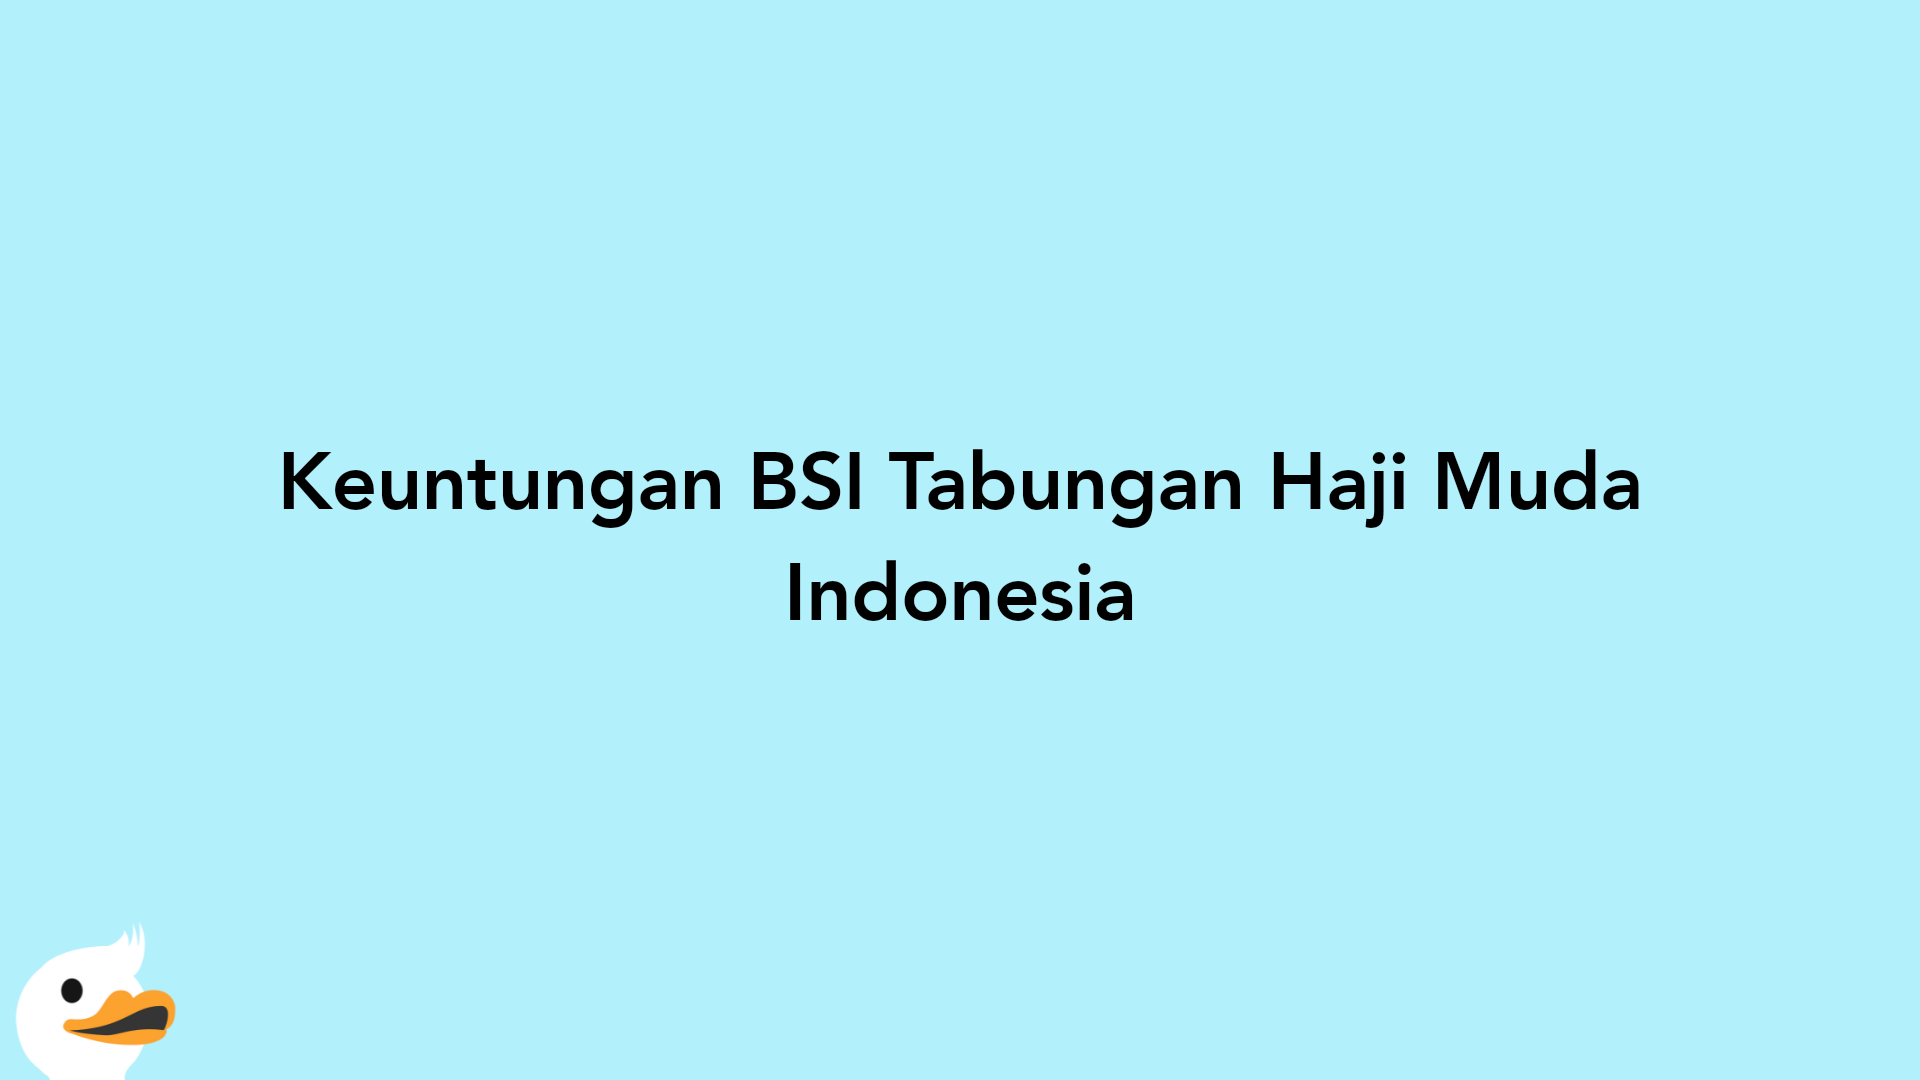 Keuntungan BSI Tabungan Haji Muda Indonesia